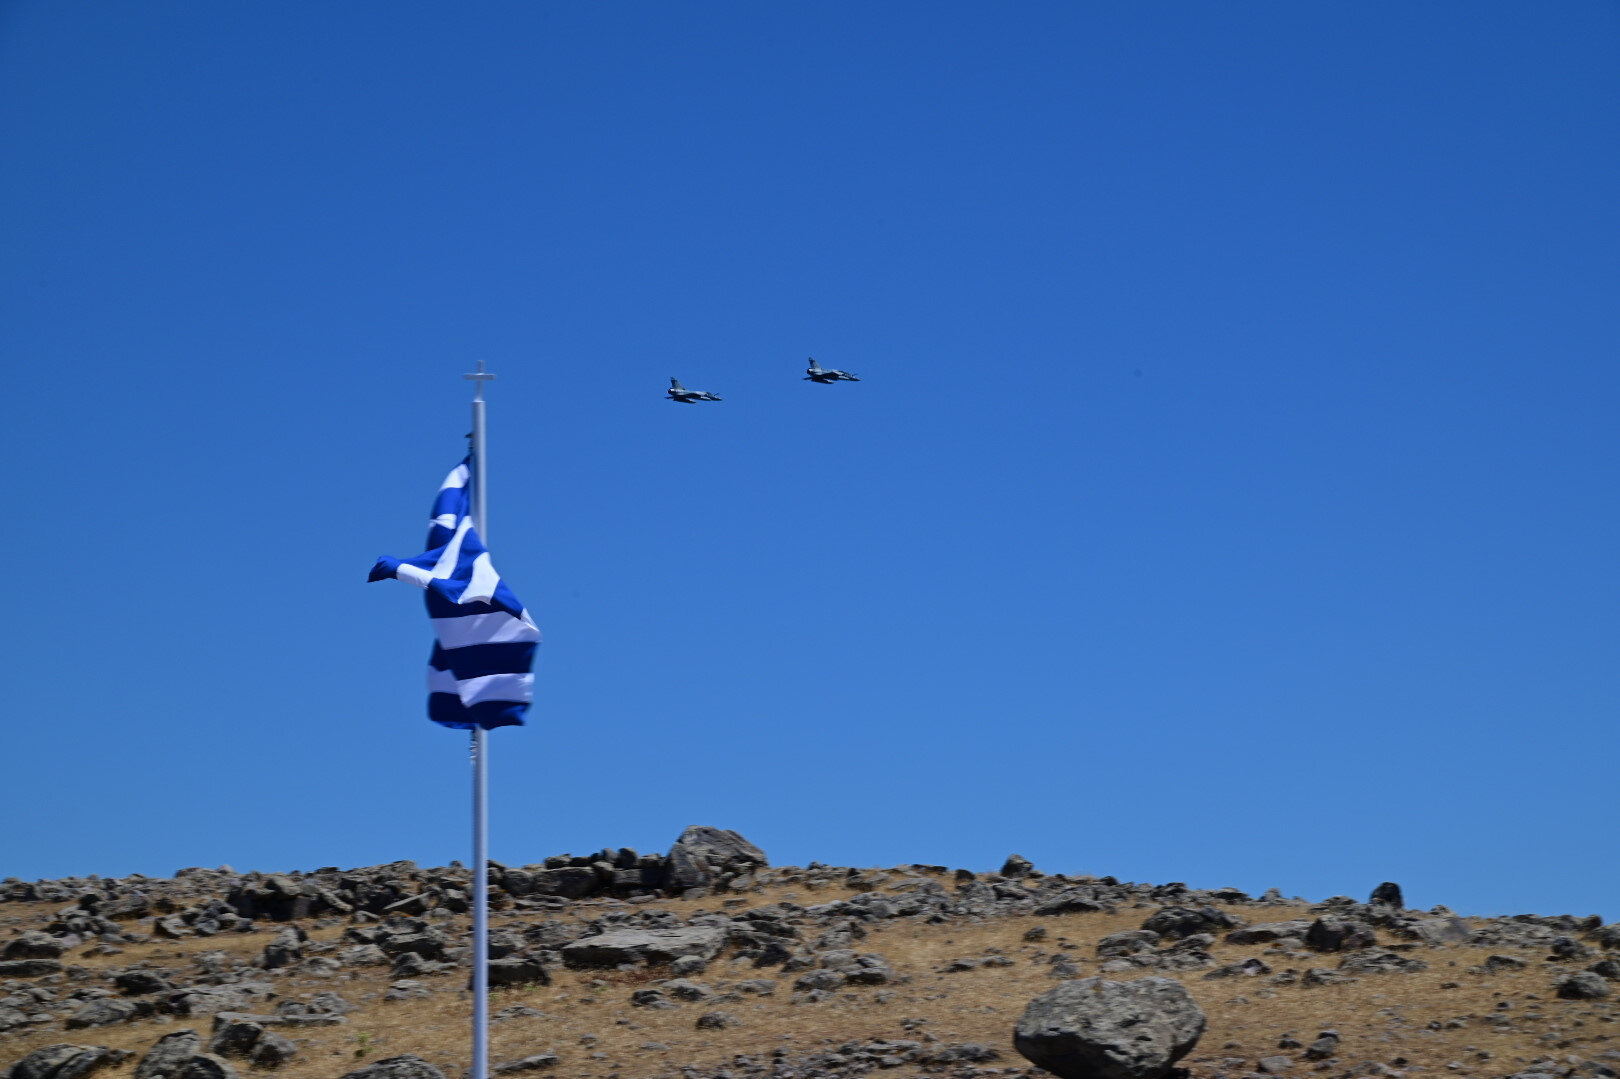 Yunan yine provokasyon peşinde: Rodos, Meis ve Midilli adalarında tatbikat yapacak